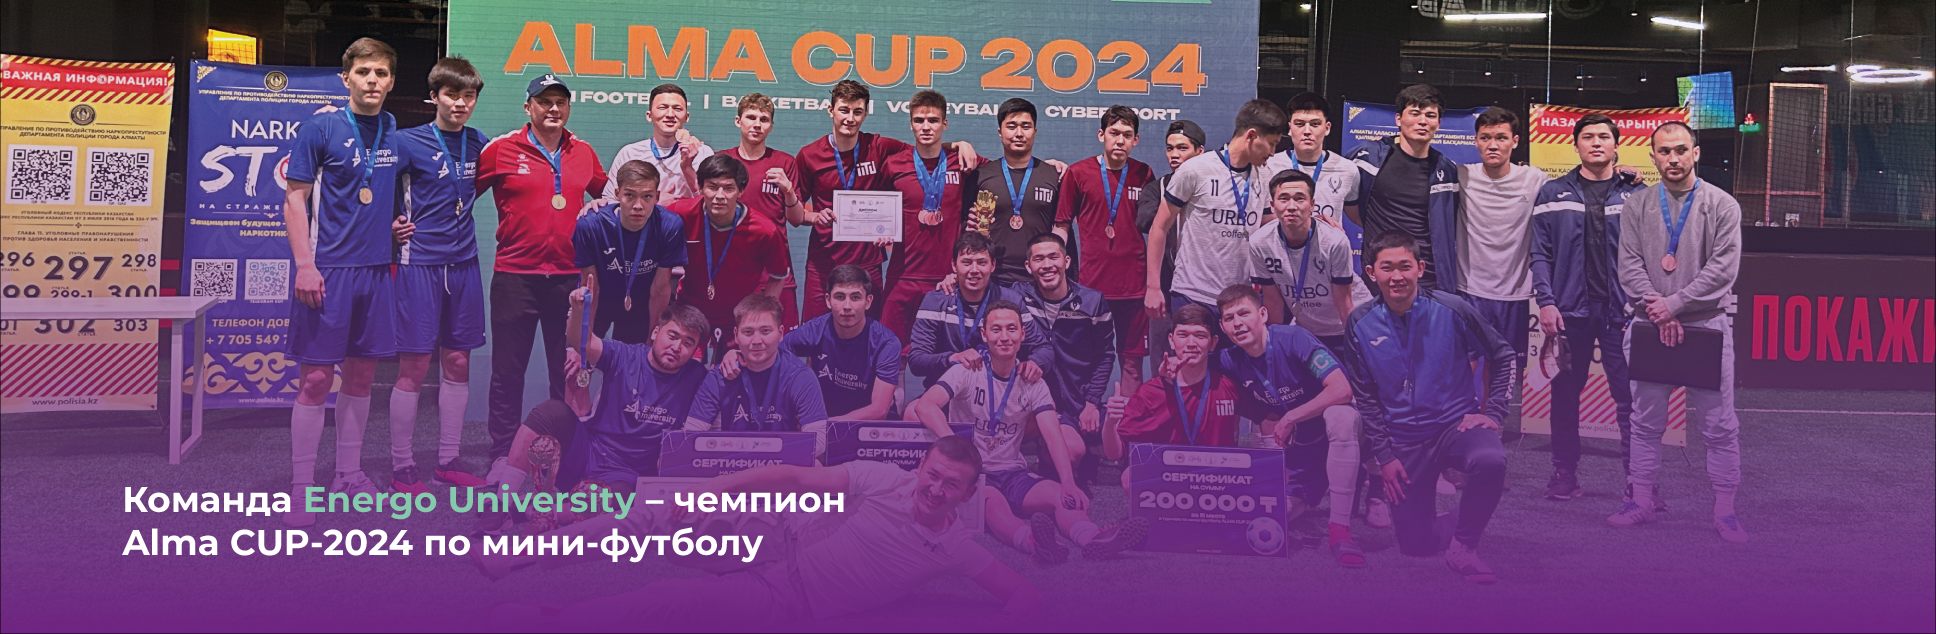 Команда Energo University – чемпион  Alma CUP-2024 по мини-футболу